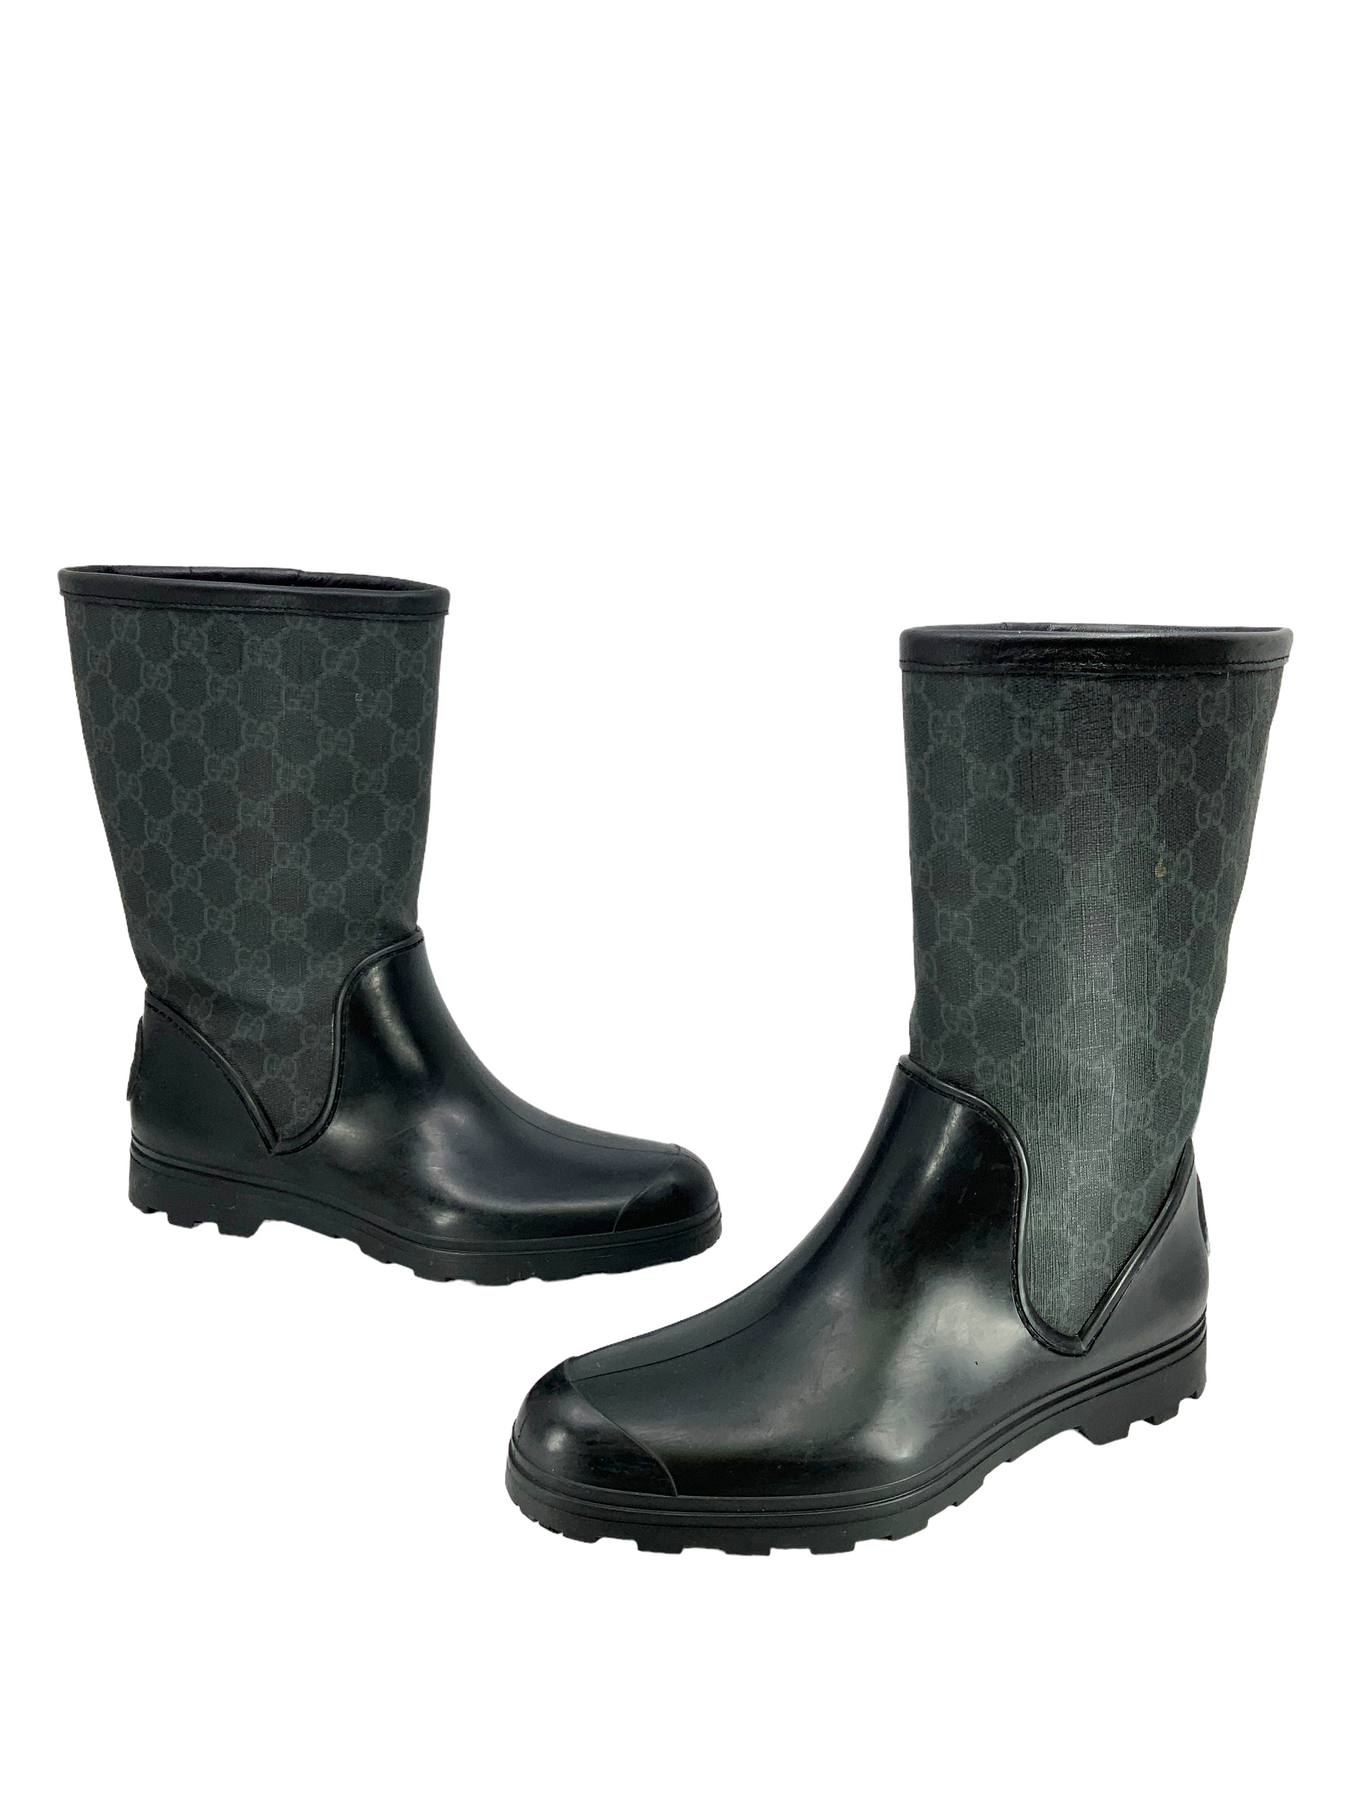 black gucci rain boots size 9